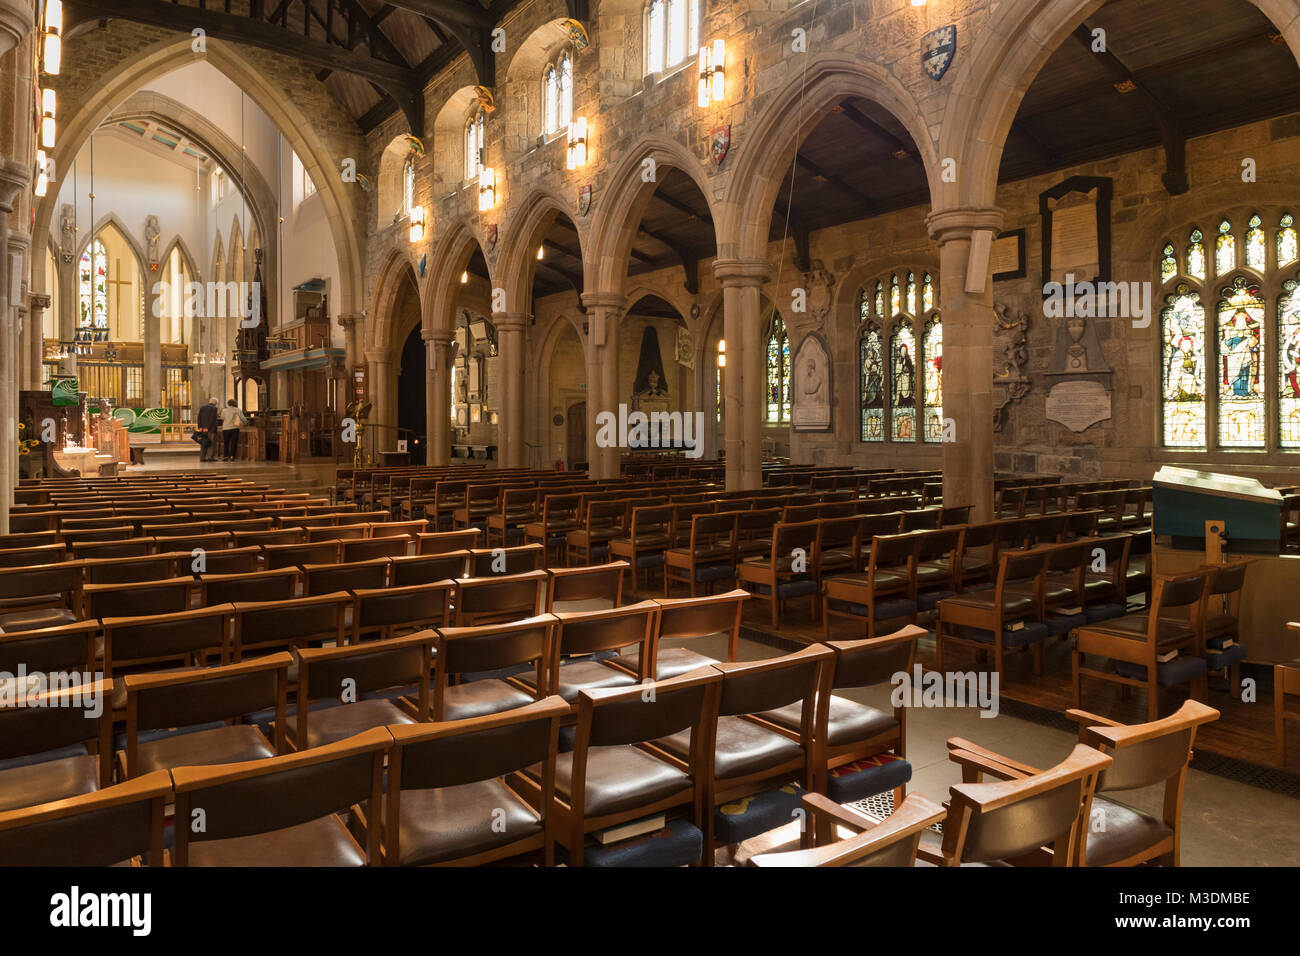 Interno della cattedrale di Bradford, vista rivolta verso est della navata con arcate in pietra, finestre di vetro colorato e file di sedili - West Yorkshire, Inghilterra, Regno Unito. Foto Stock